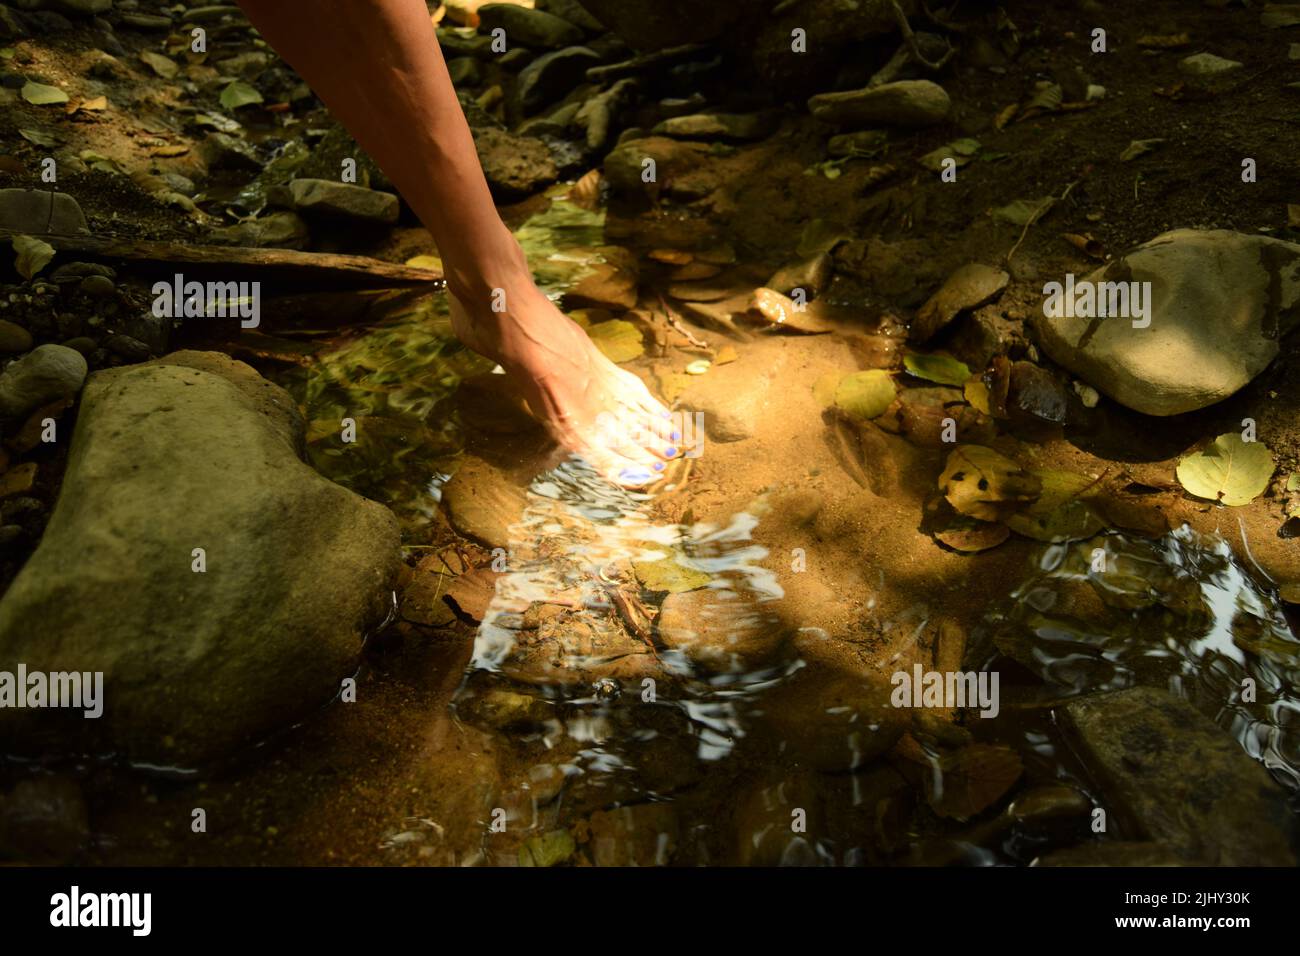 Elegante Bewegung einer Barfuß-Frau, in der Nähe des Fußes in einer klaren, frischen Wasserpfütze in der Natur, während der Sonnenstrahl auf ihrem Fuß reflektiert Stockfoto